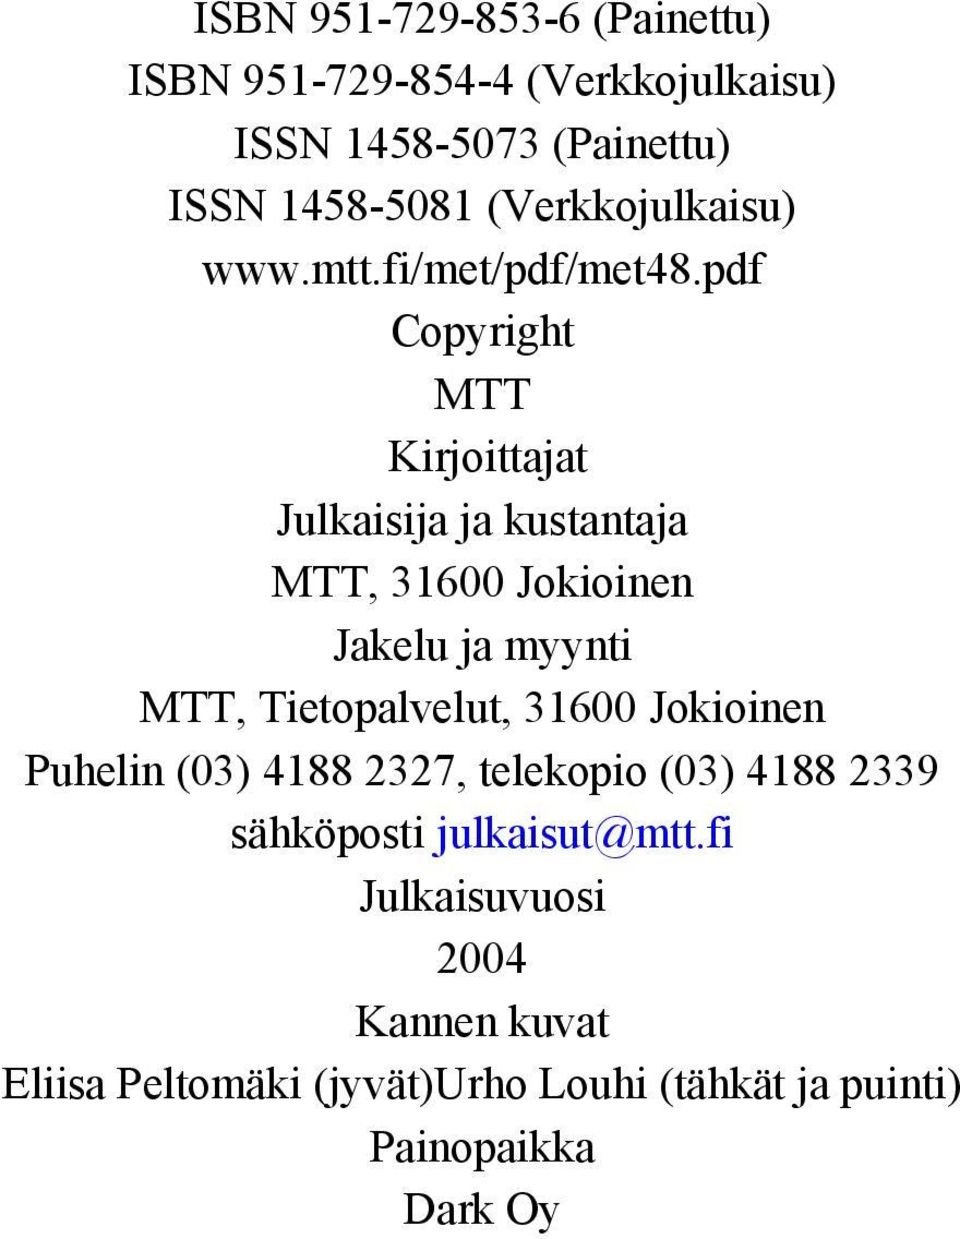 pdf Copyright MTT Kirjoittajat Julkaisija ja kustantaja MTT, 31600 Jokioinen Jakelu ja myynti MTT, Tietopalvelut,